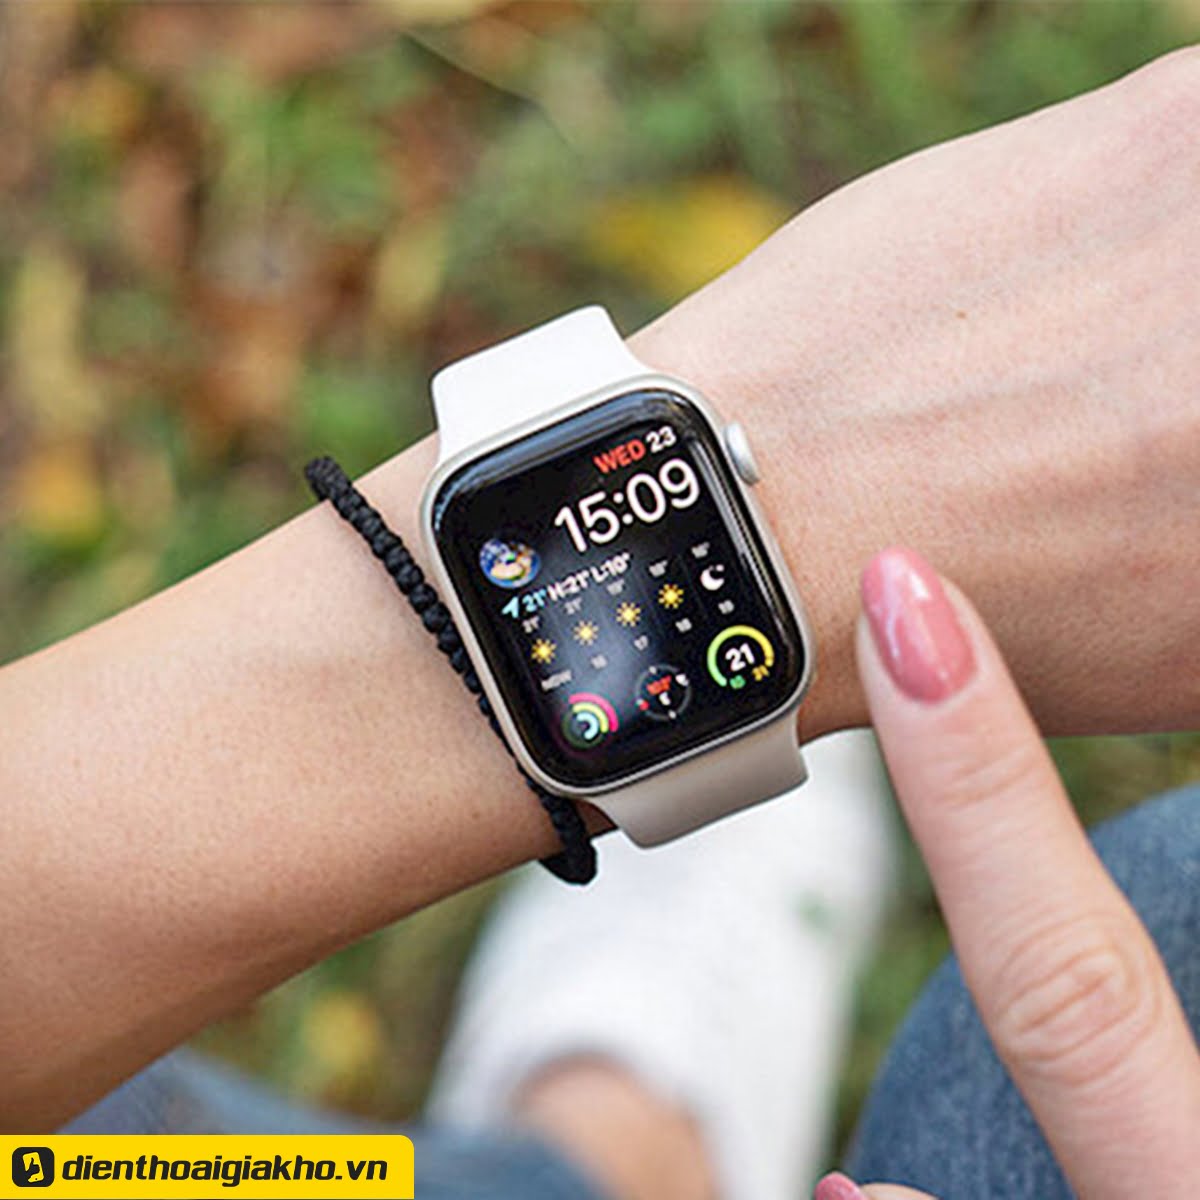 Thương hiệu Apple Watch chính hãng nổi tiếng trên thế giới